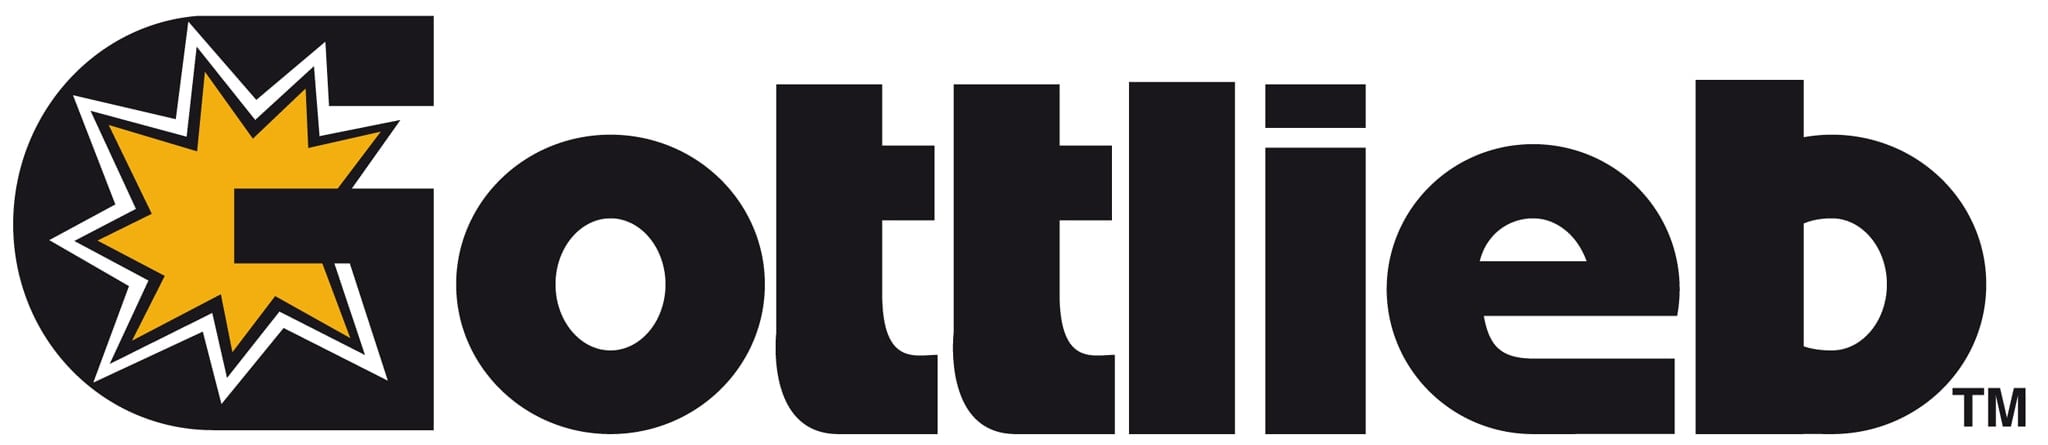 Gottlieb - logo